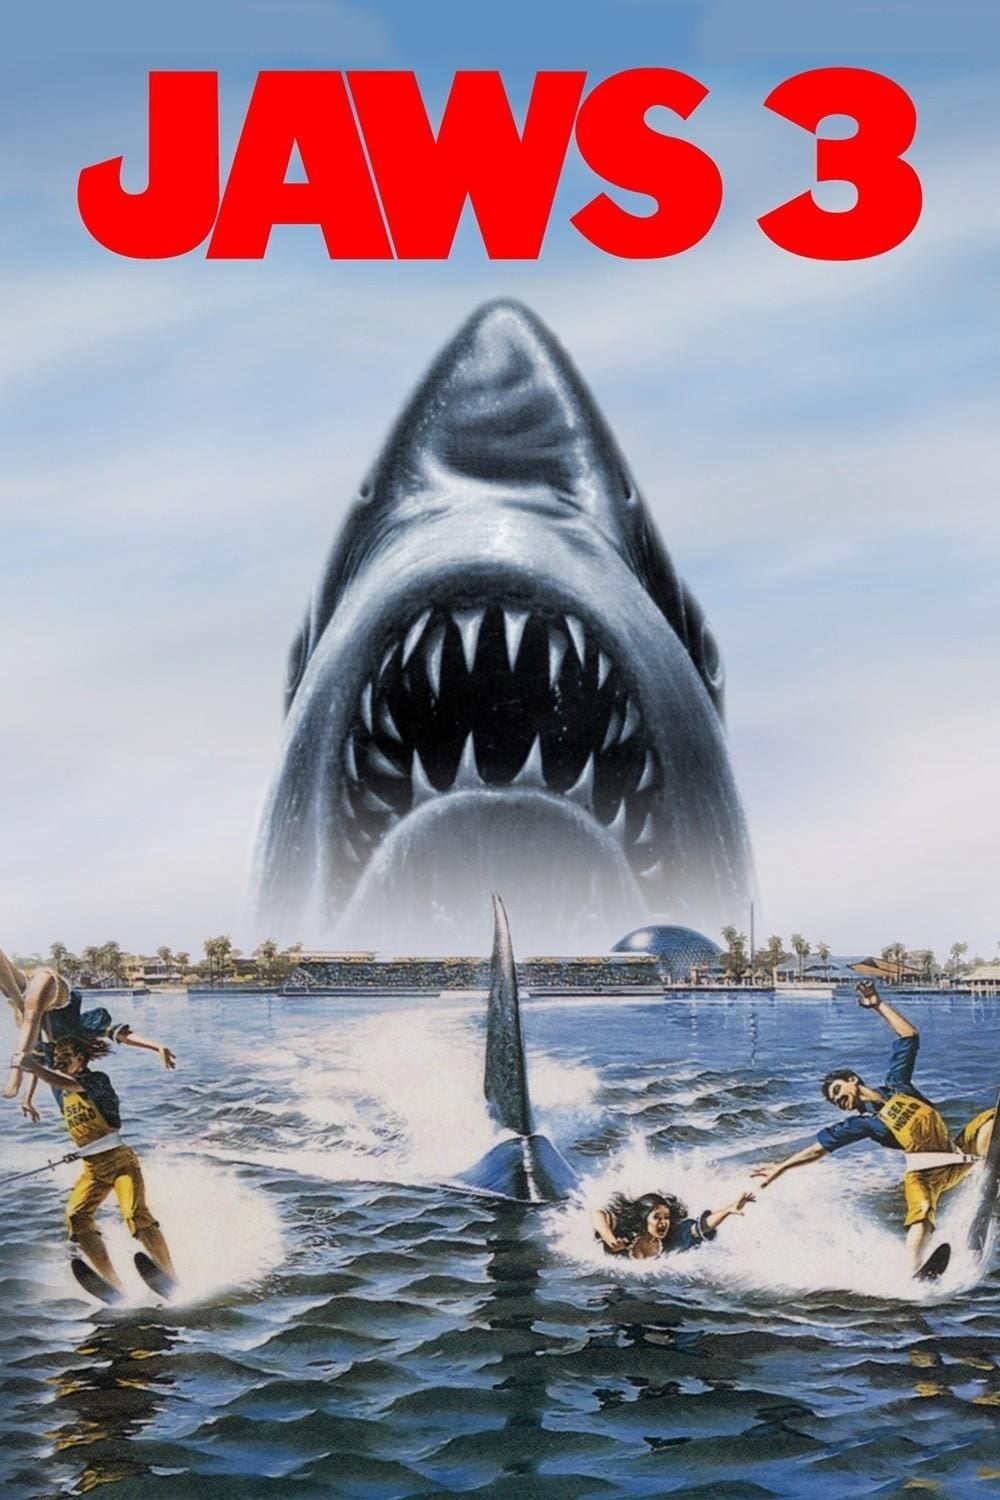 Les Dents de la mer 3 (1983)